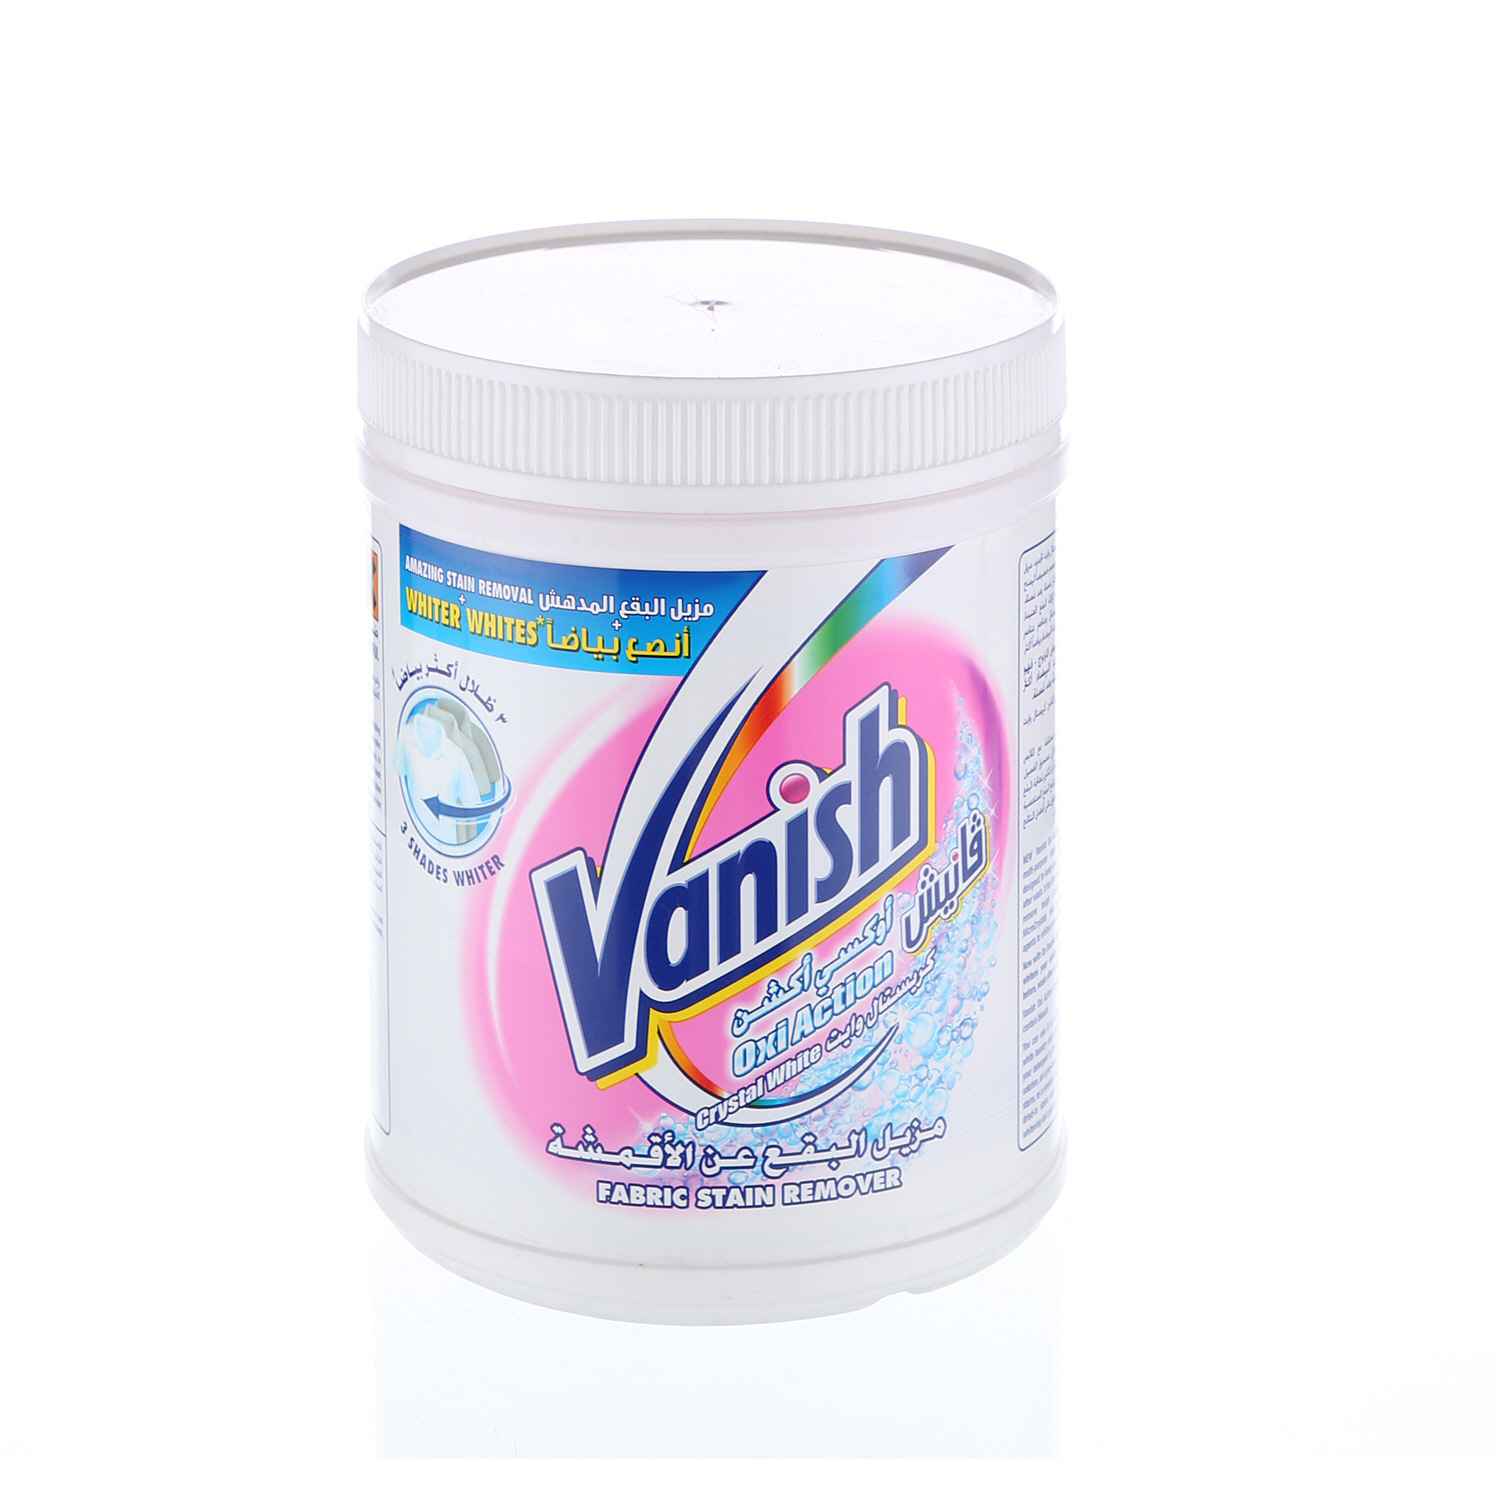 Vanish Crystal White Powder 900 g